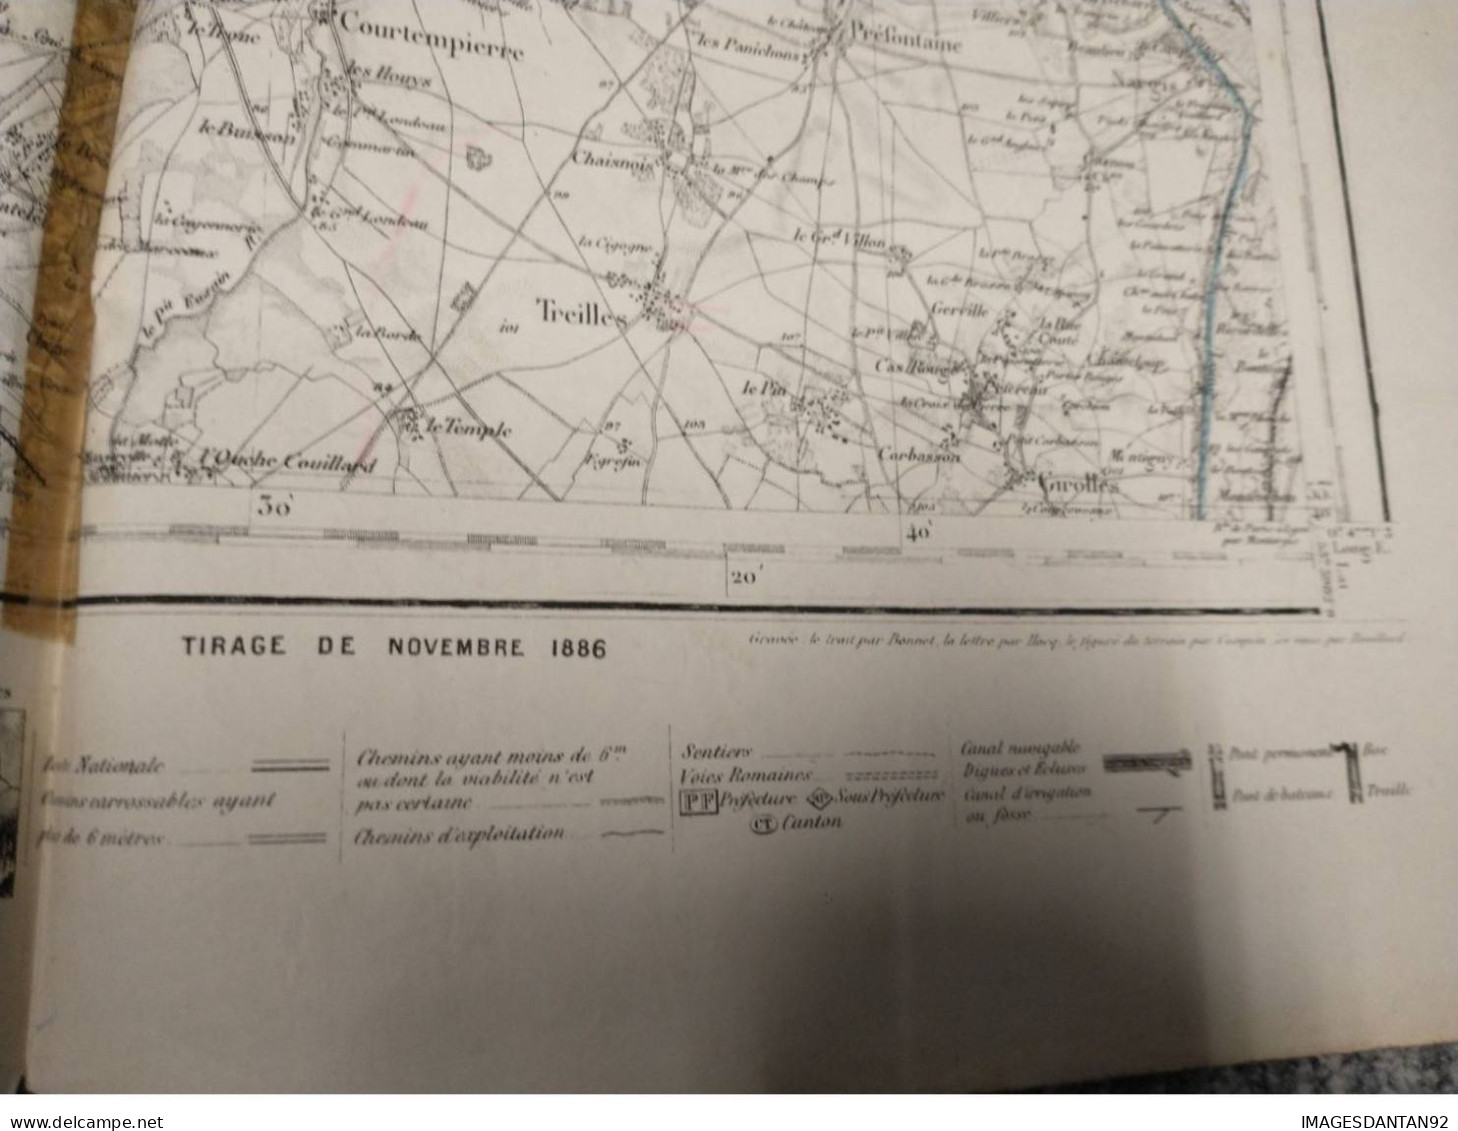 77 FONTAINEBLEAU GRAND PLAN DE 1886 LEVEE PAR OFFICIERS CORPS D ETAT MAJOR DE 1839  CACHET STEAM YACHT DAUPHIN CAPITAINE - Topographical Maps